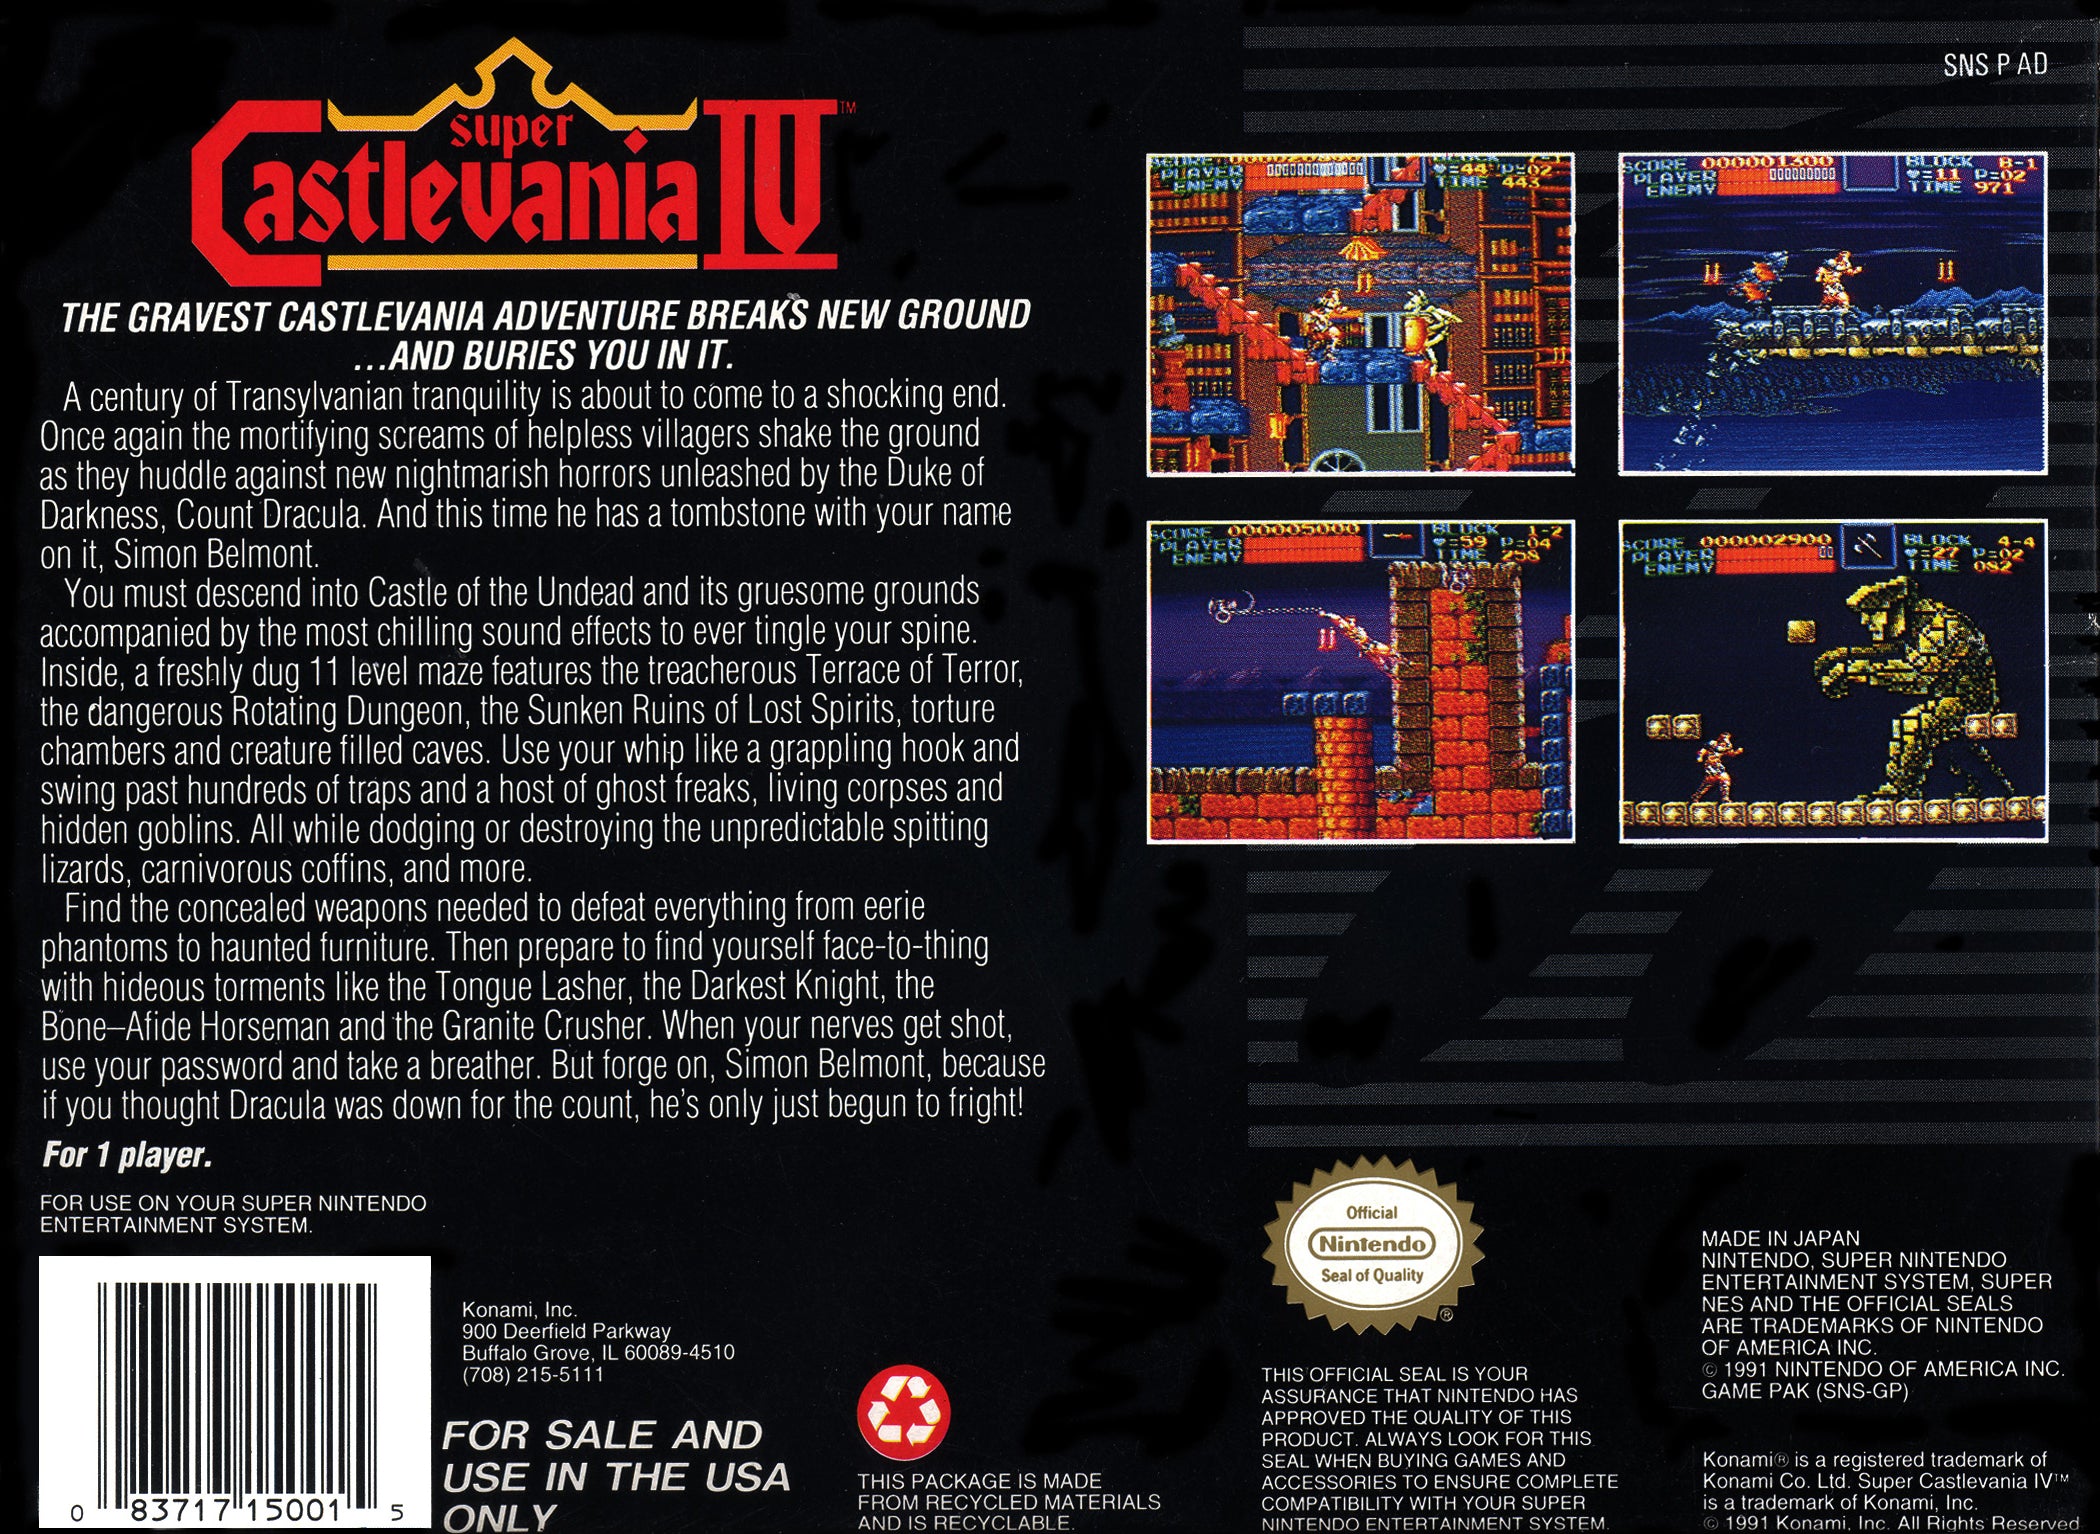 Super Castlevania IV - Super Nintendo (SNES) Game Cartridge